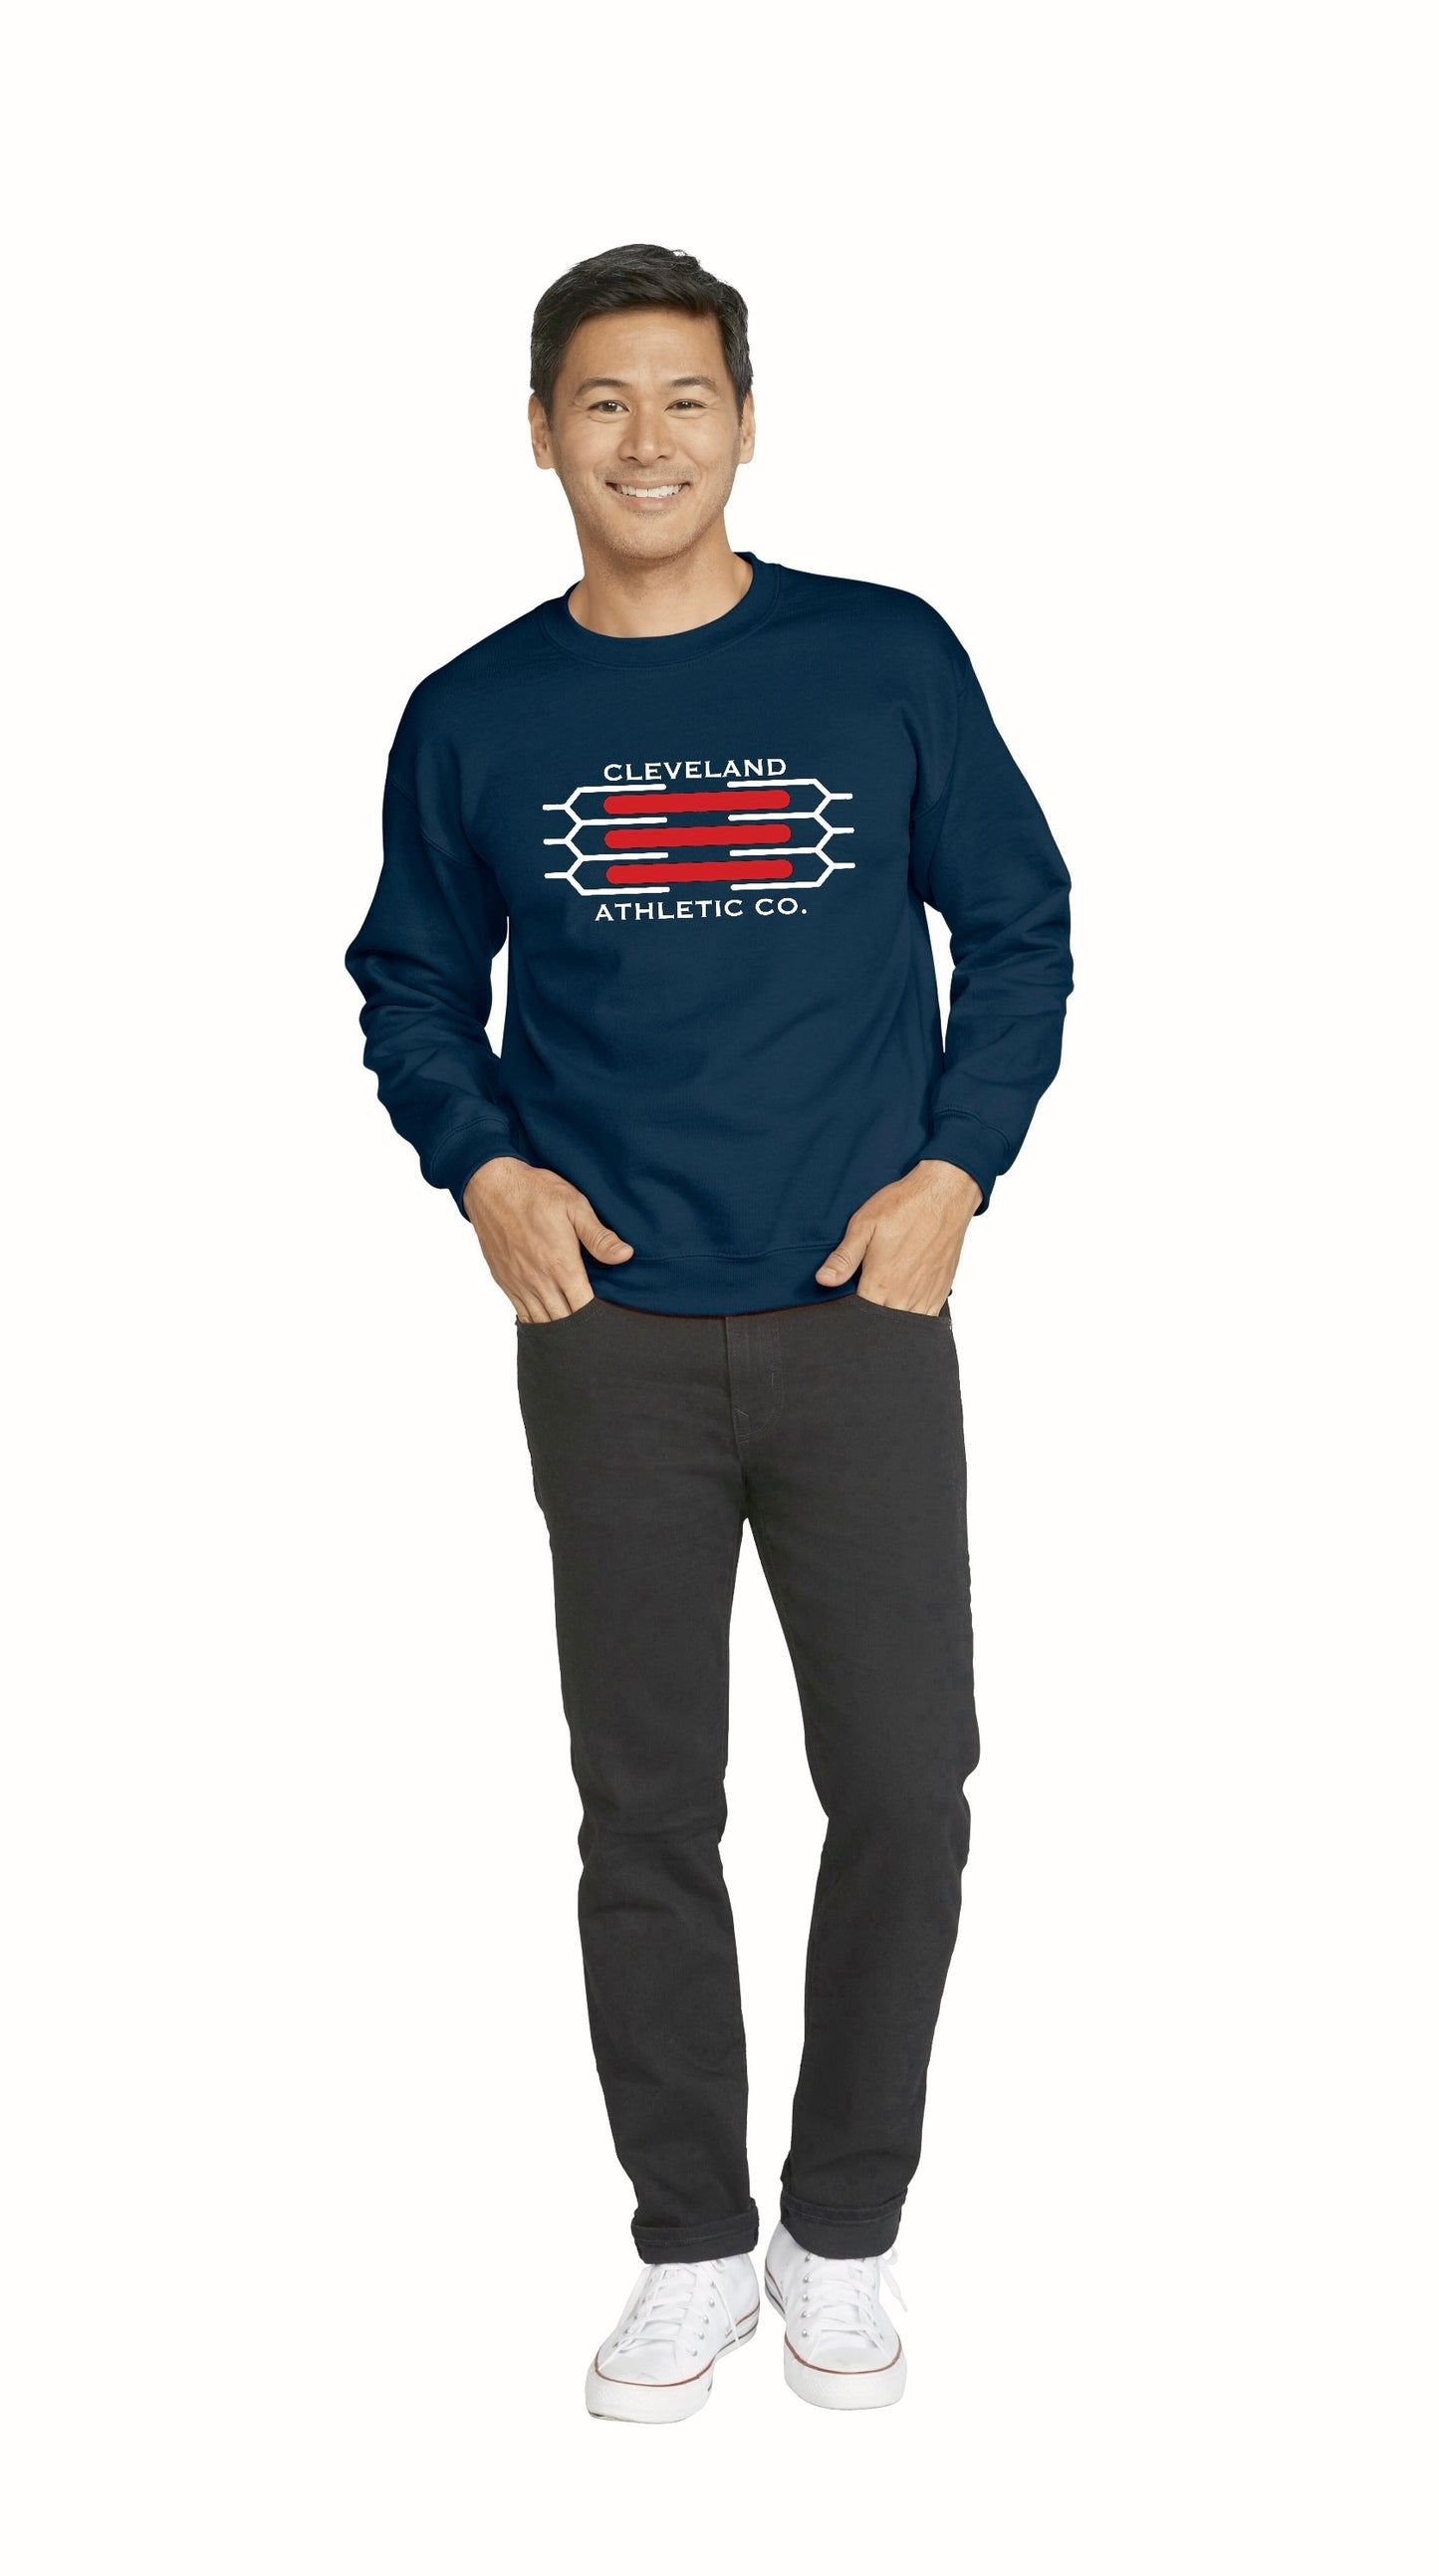 Men’s Cleveland Crewneck Sweatshirt